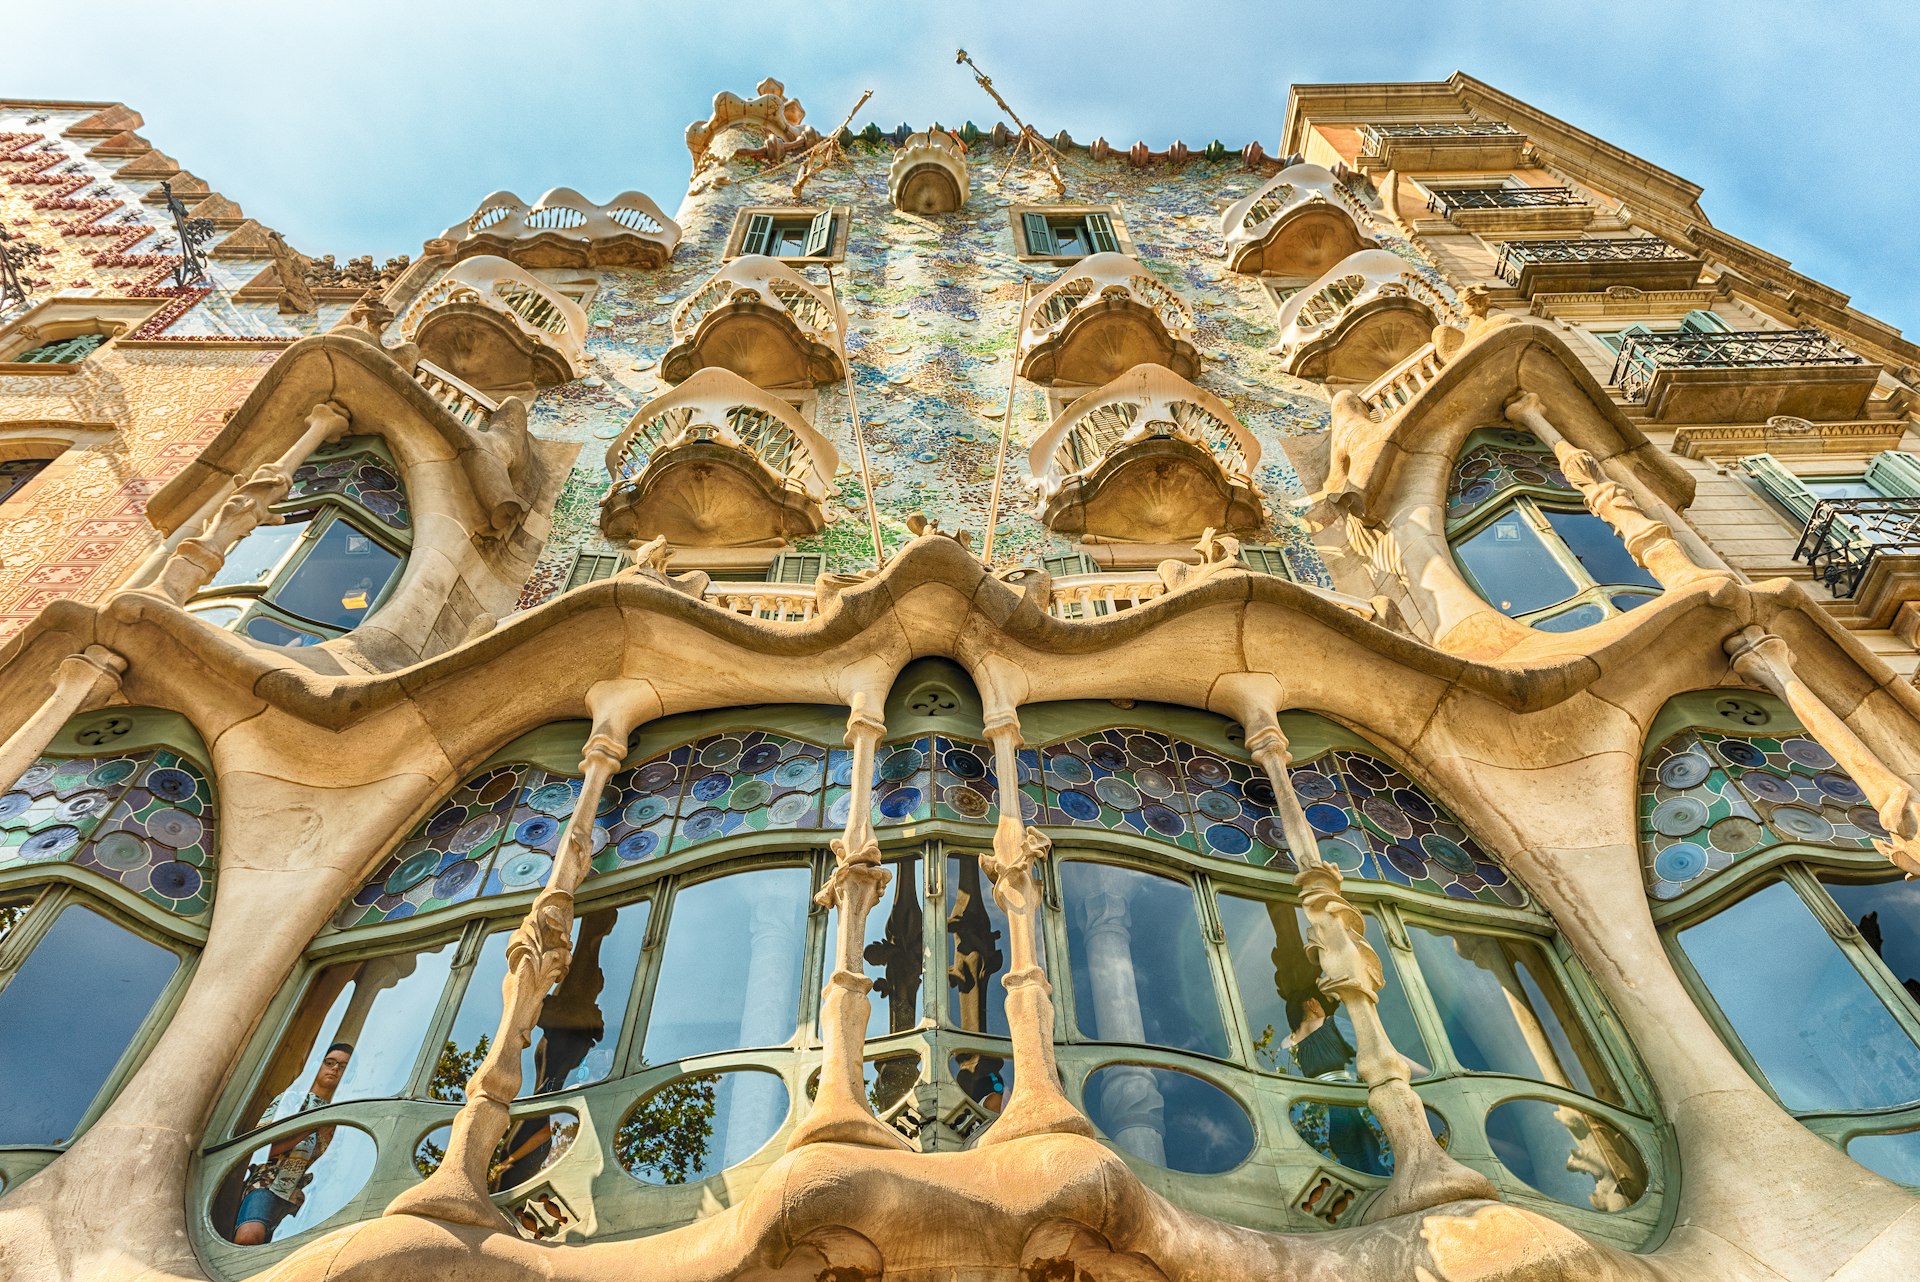 Fachada de la obra maestra modernista Casa Batlló, un edificio de renombre diseñado por Antoni Gaudí, Barcelona, Cataluña, España